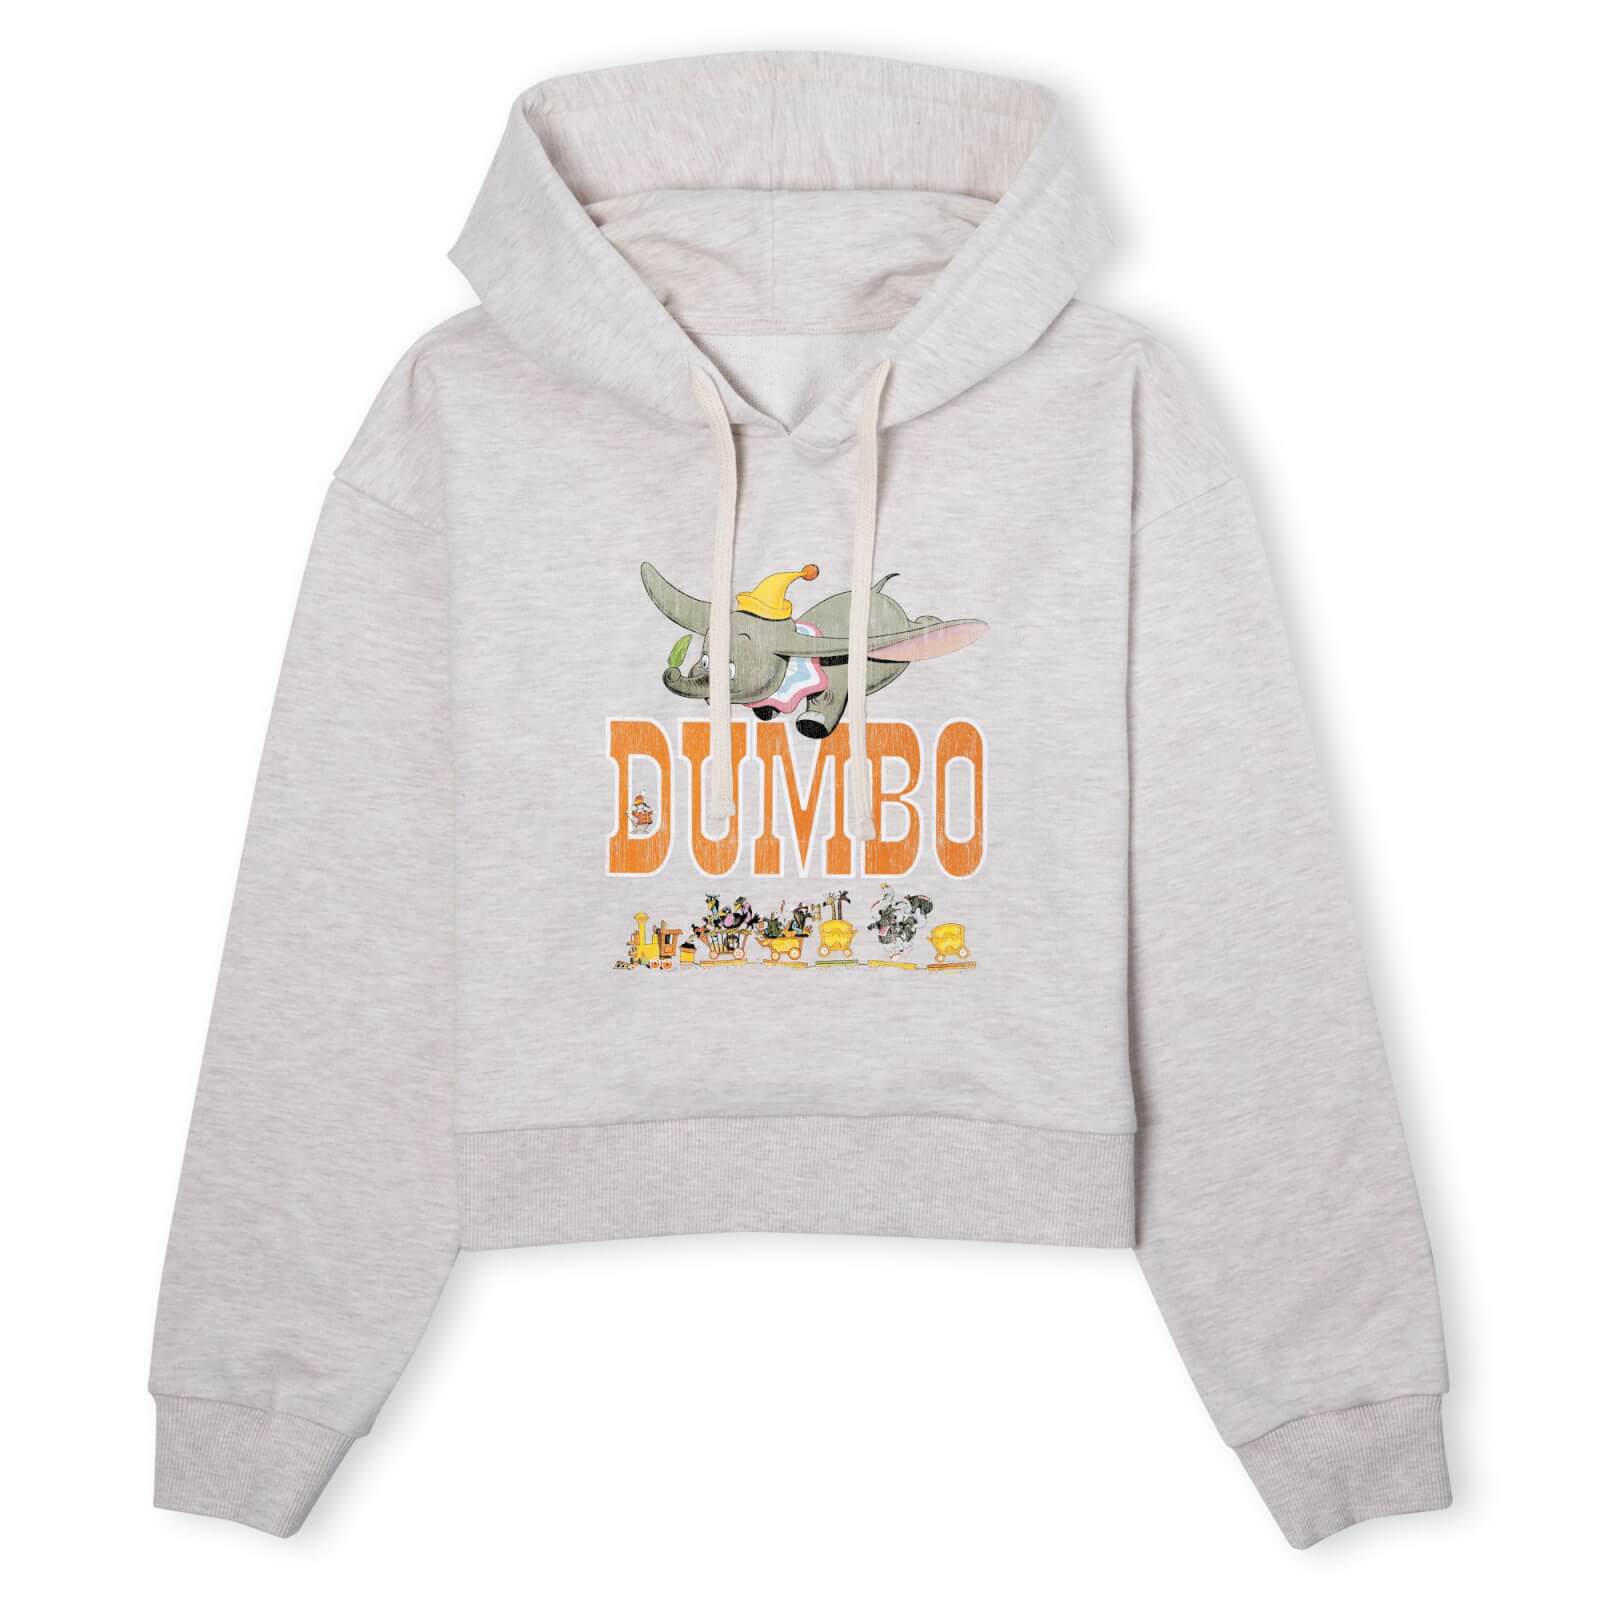 dumbo the one the only women's cropped hoodie - ecru marl - l - ecru marl